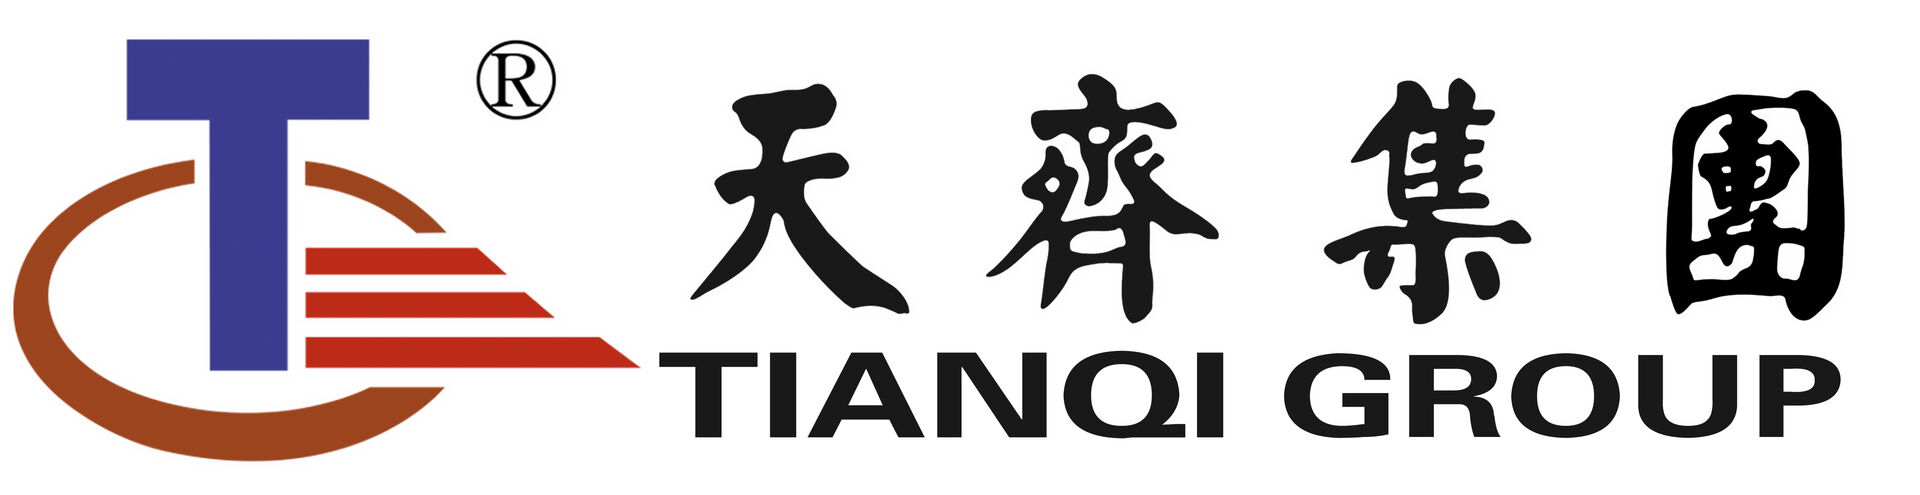 山东天齐置业集团公司的logo